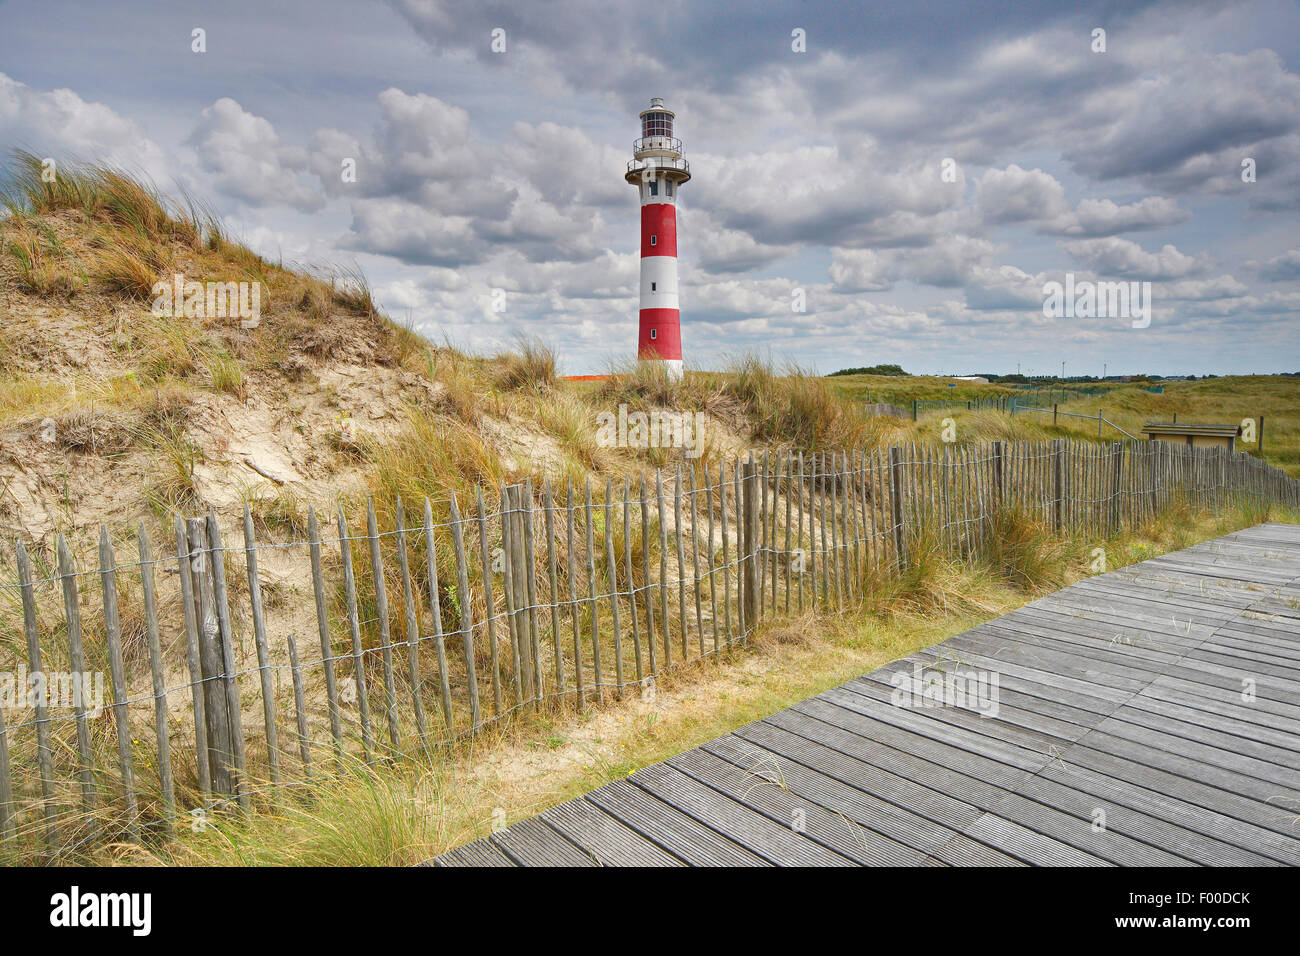 boardwalk / Raised wooden walkway in the dunes, Belgium Stock Photo